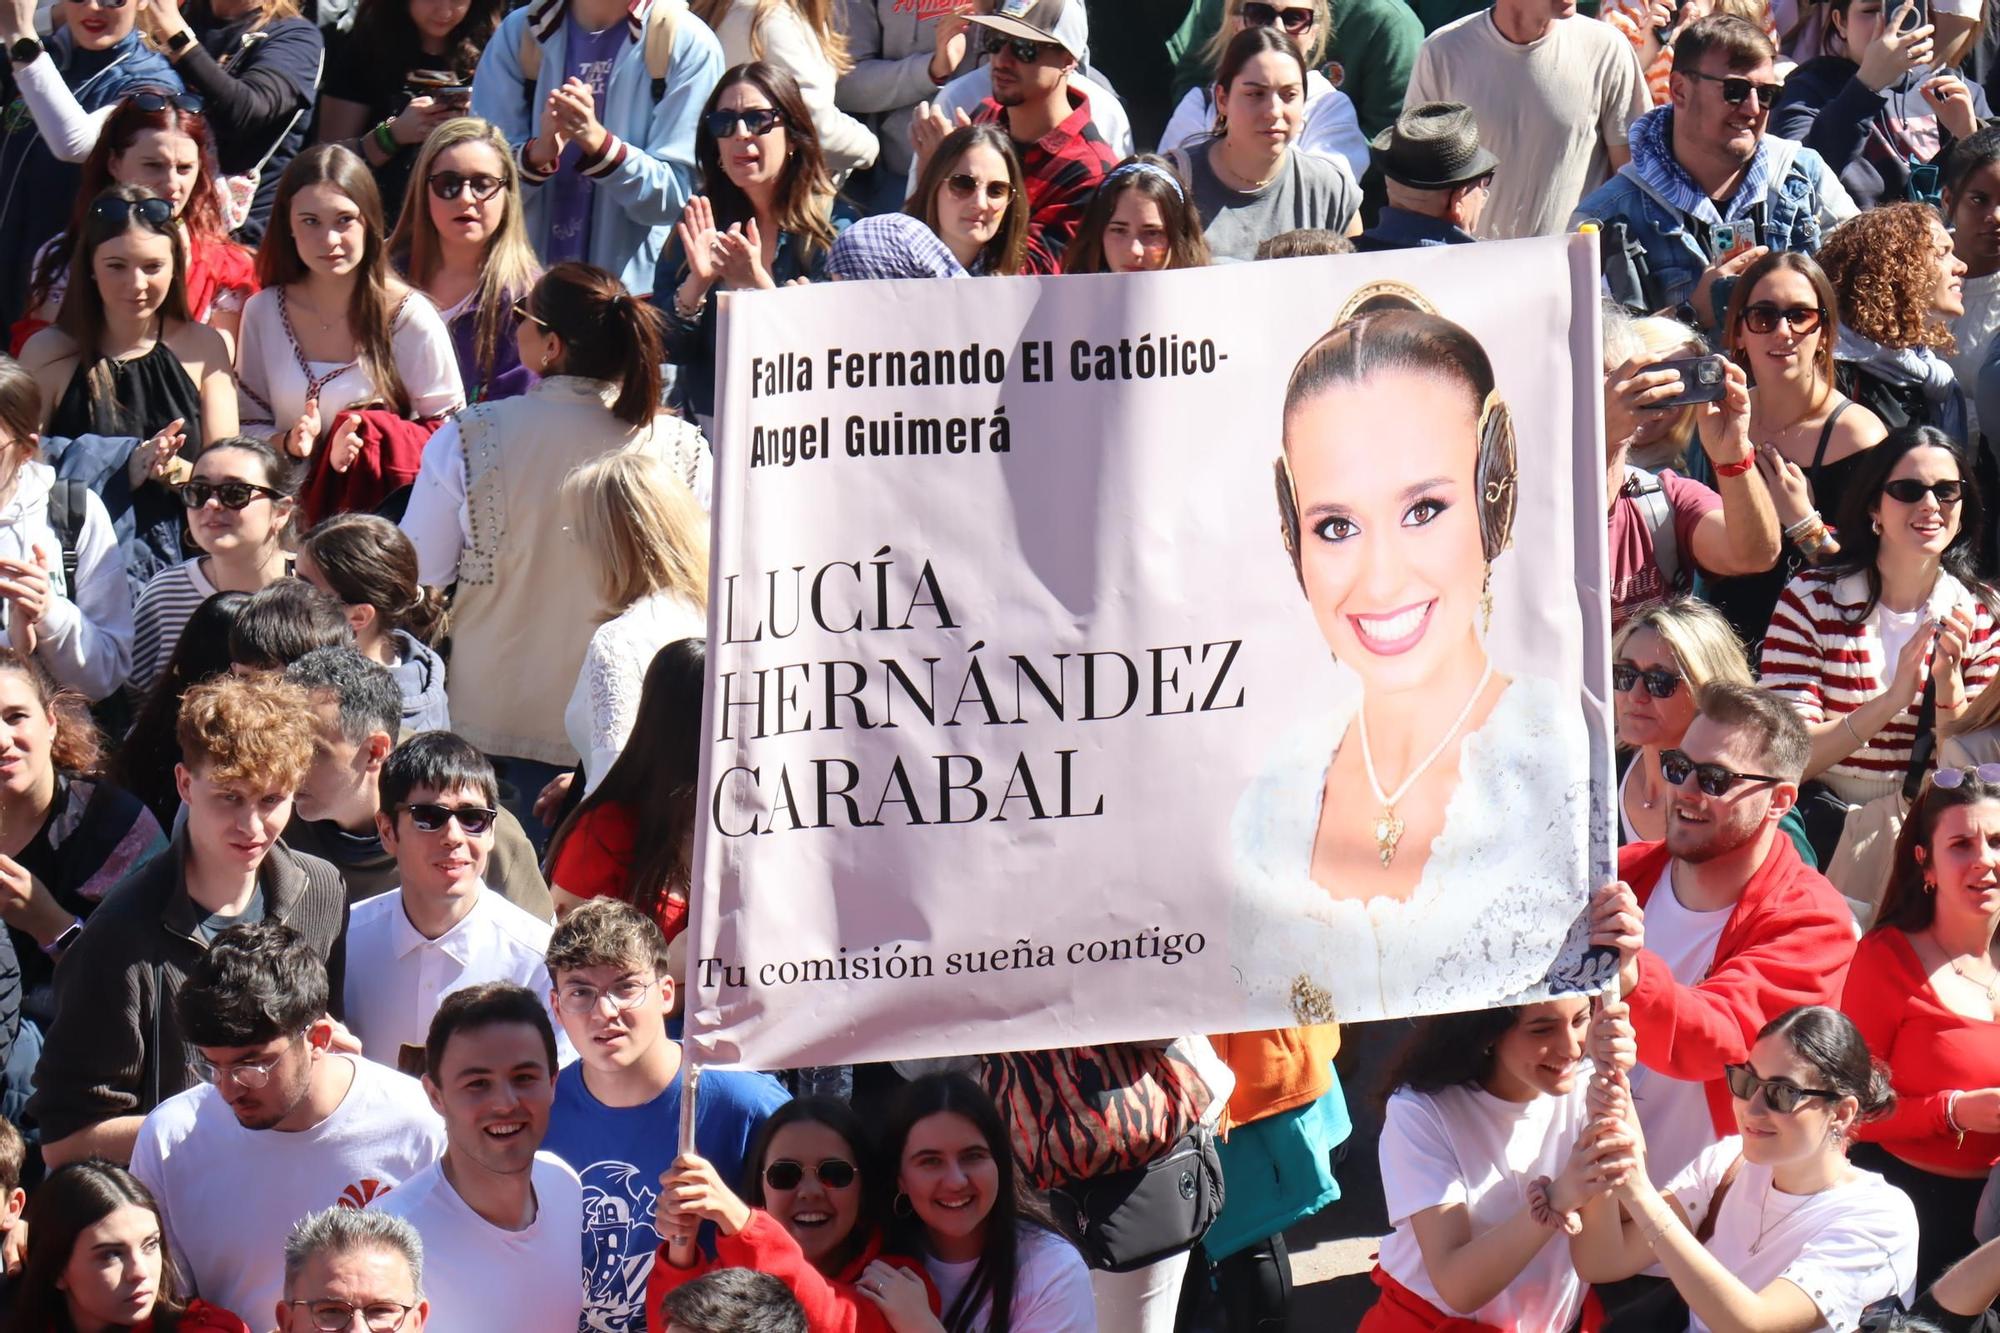 Los fans de Lucía Hernández